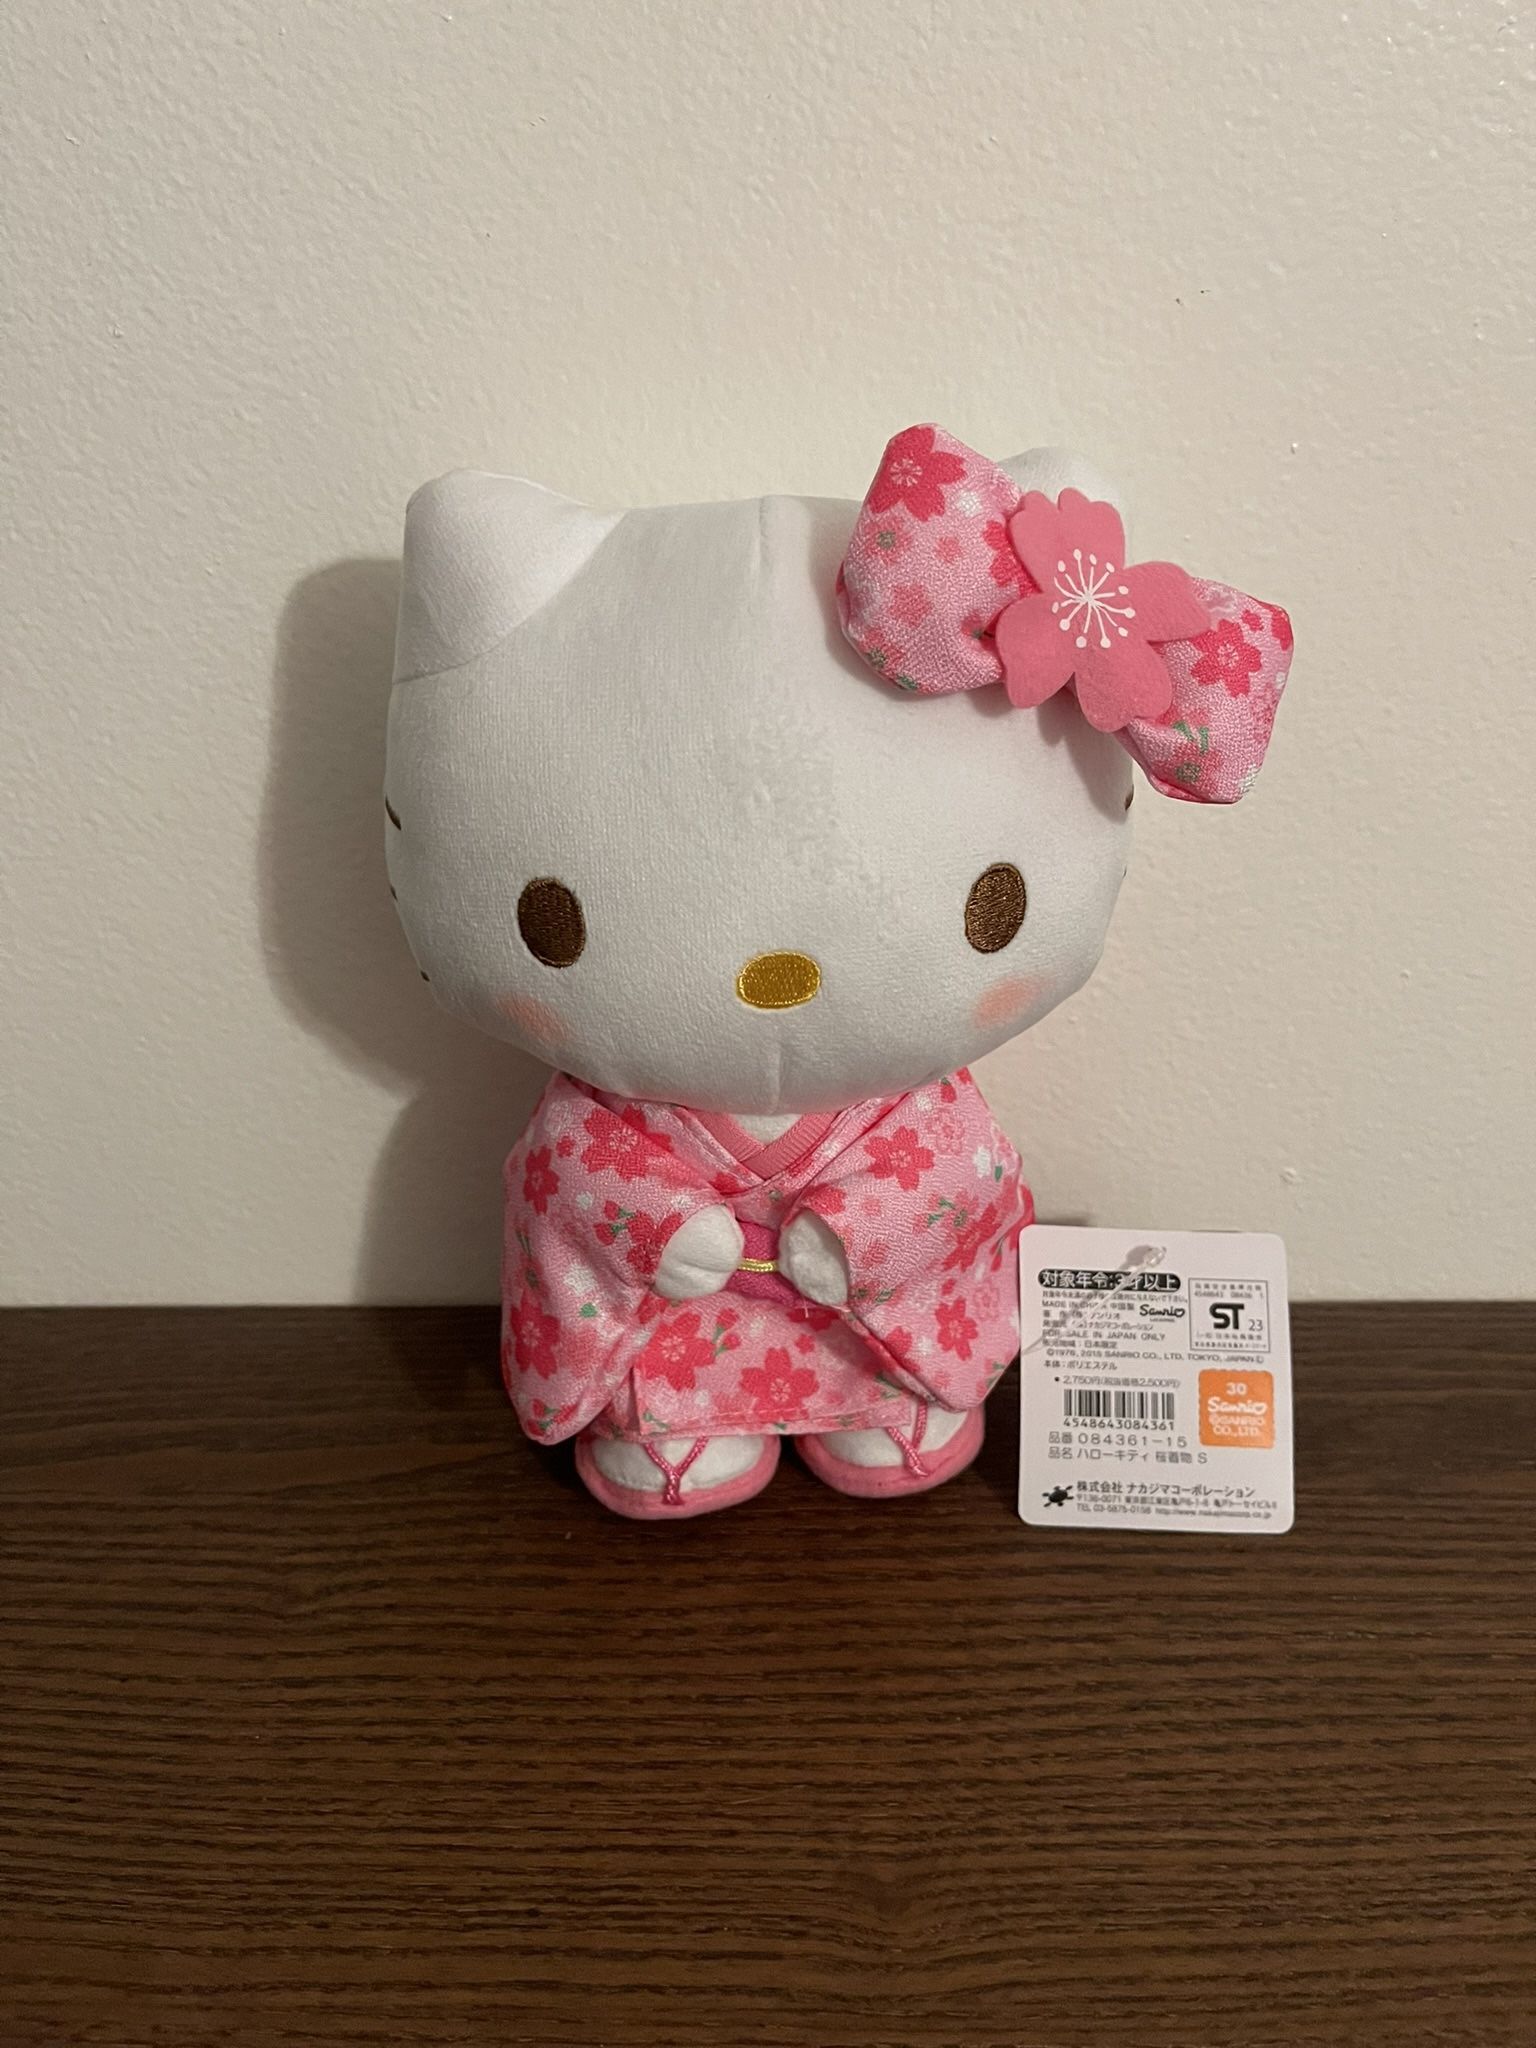 Hello kitty in Kimono 6 inches plush